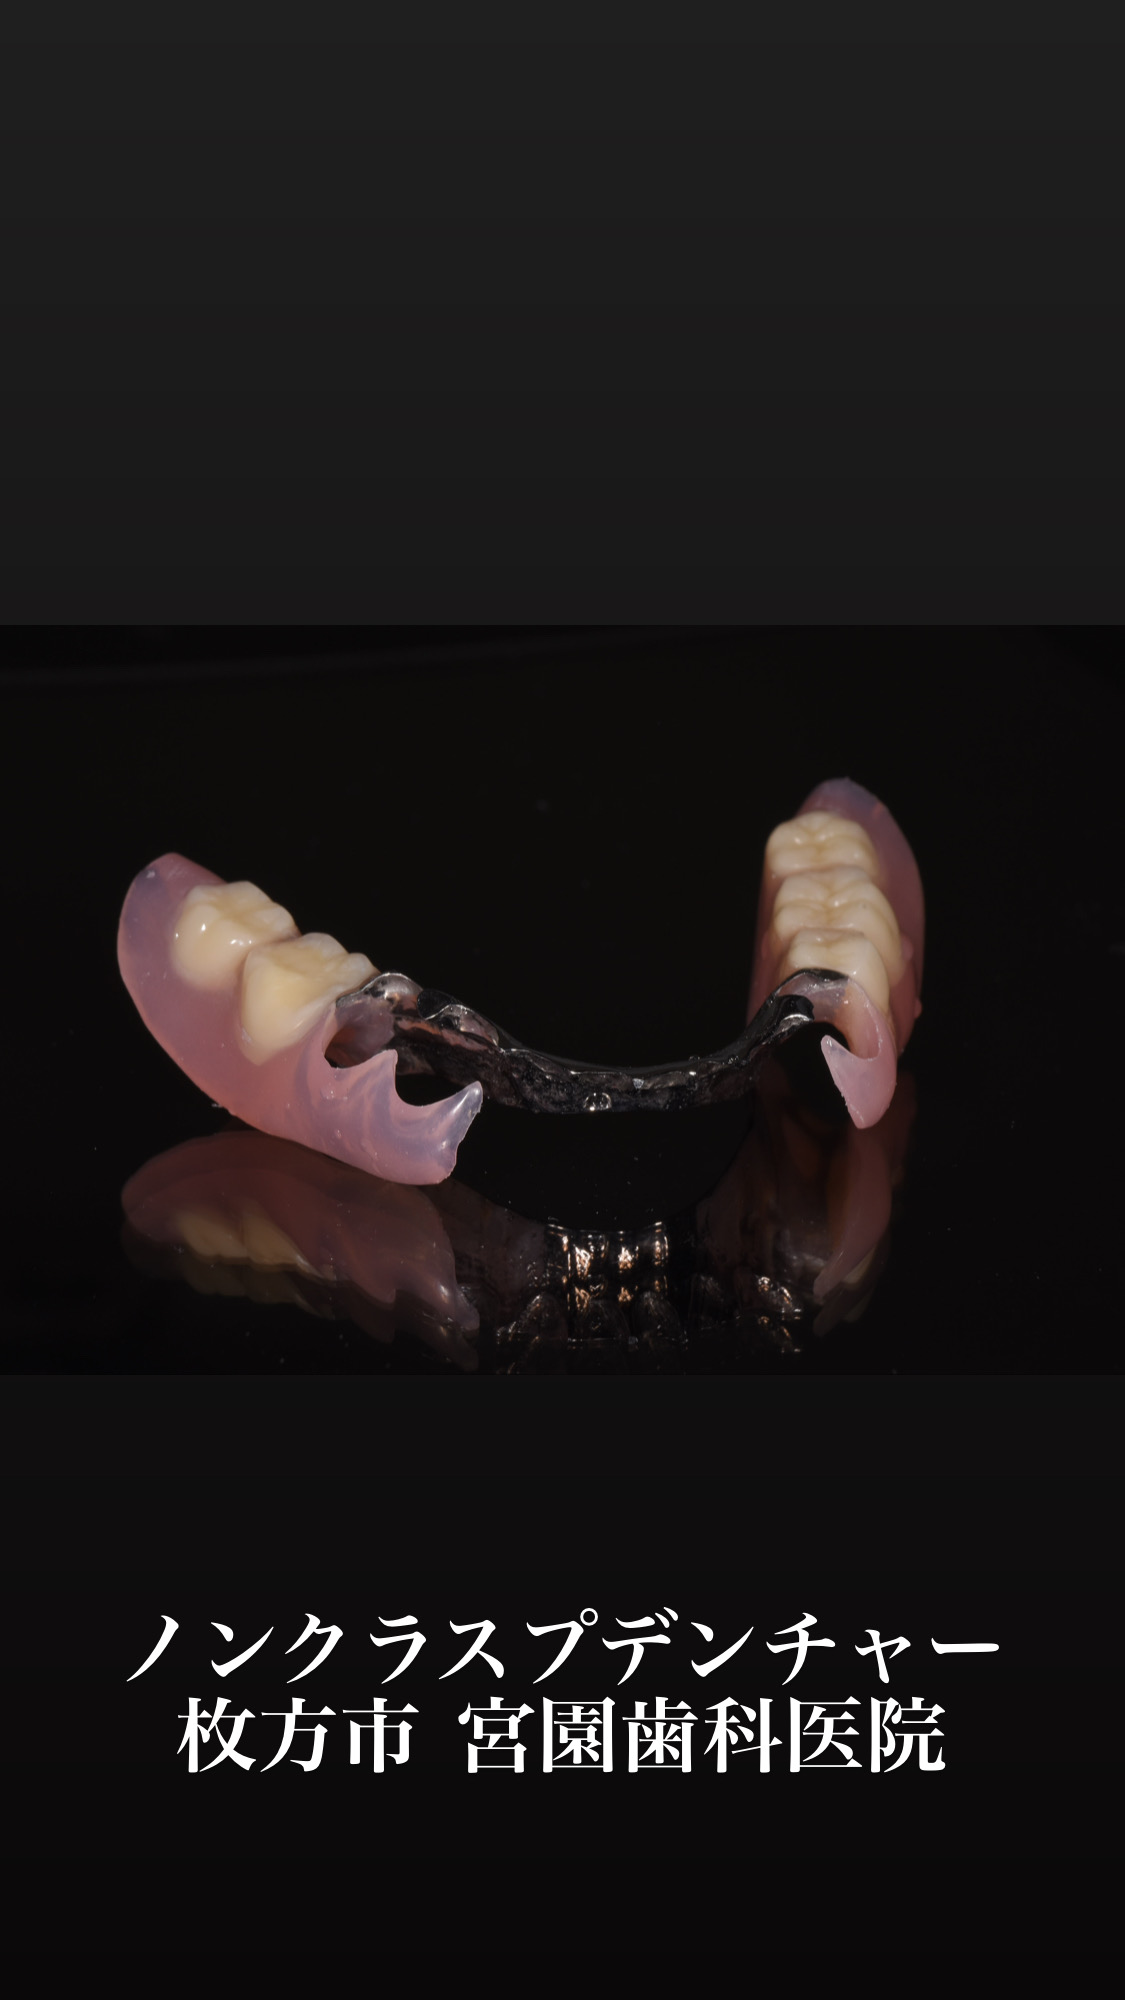 ノンクラスプデンチャー(入れ歯に見えない入れ歯)